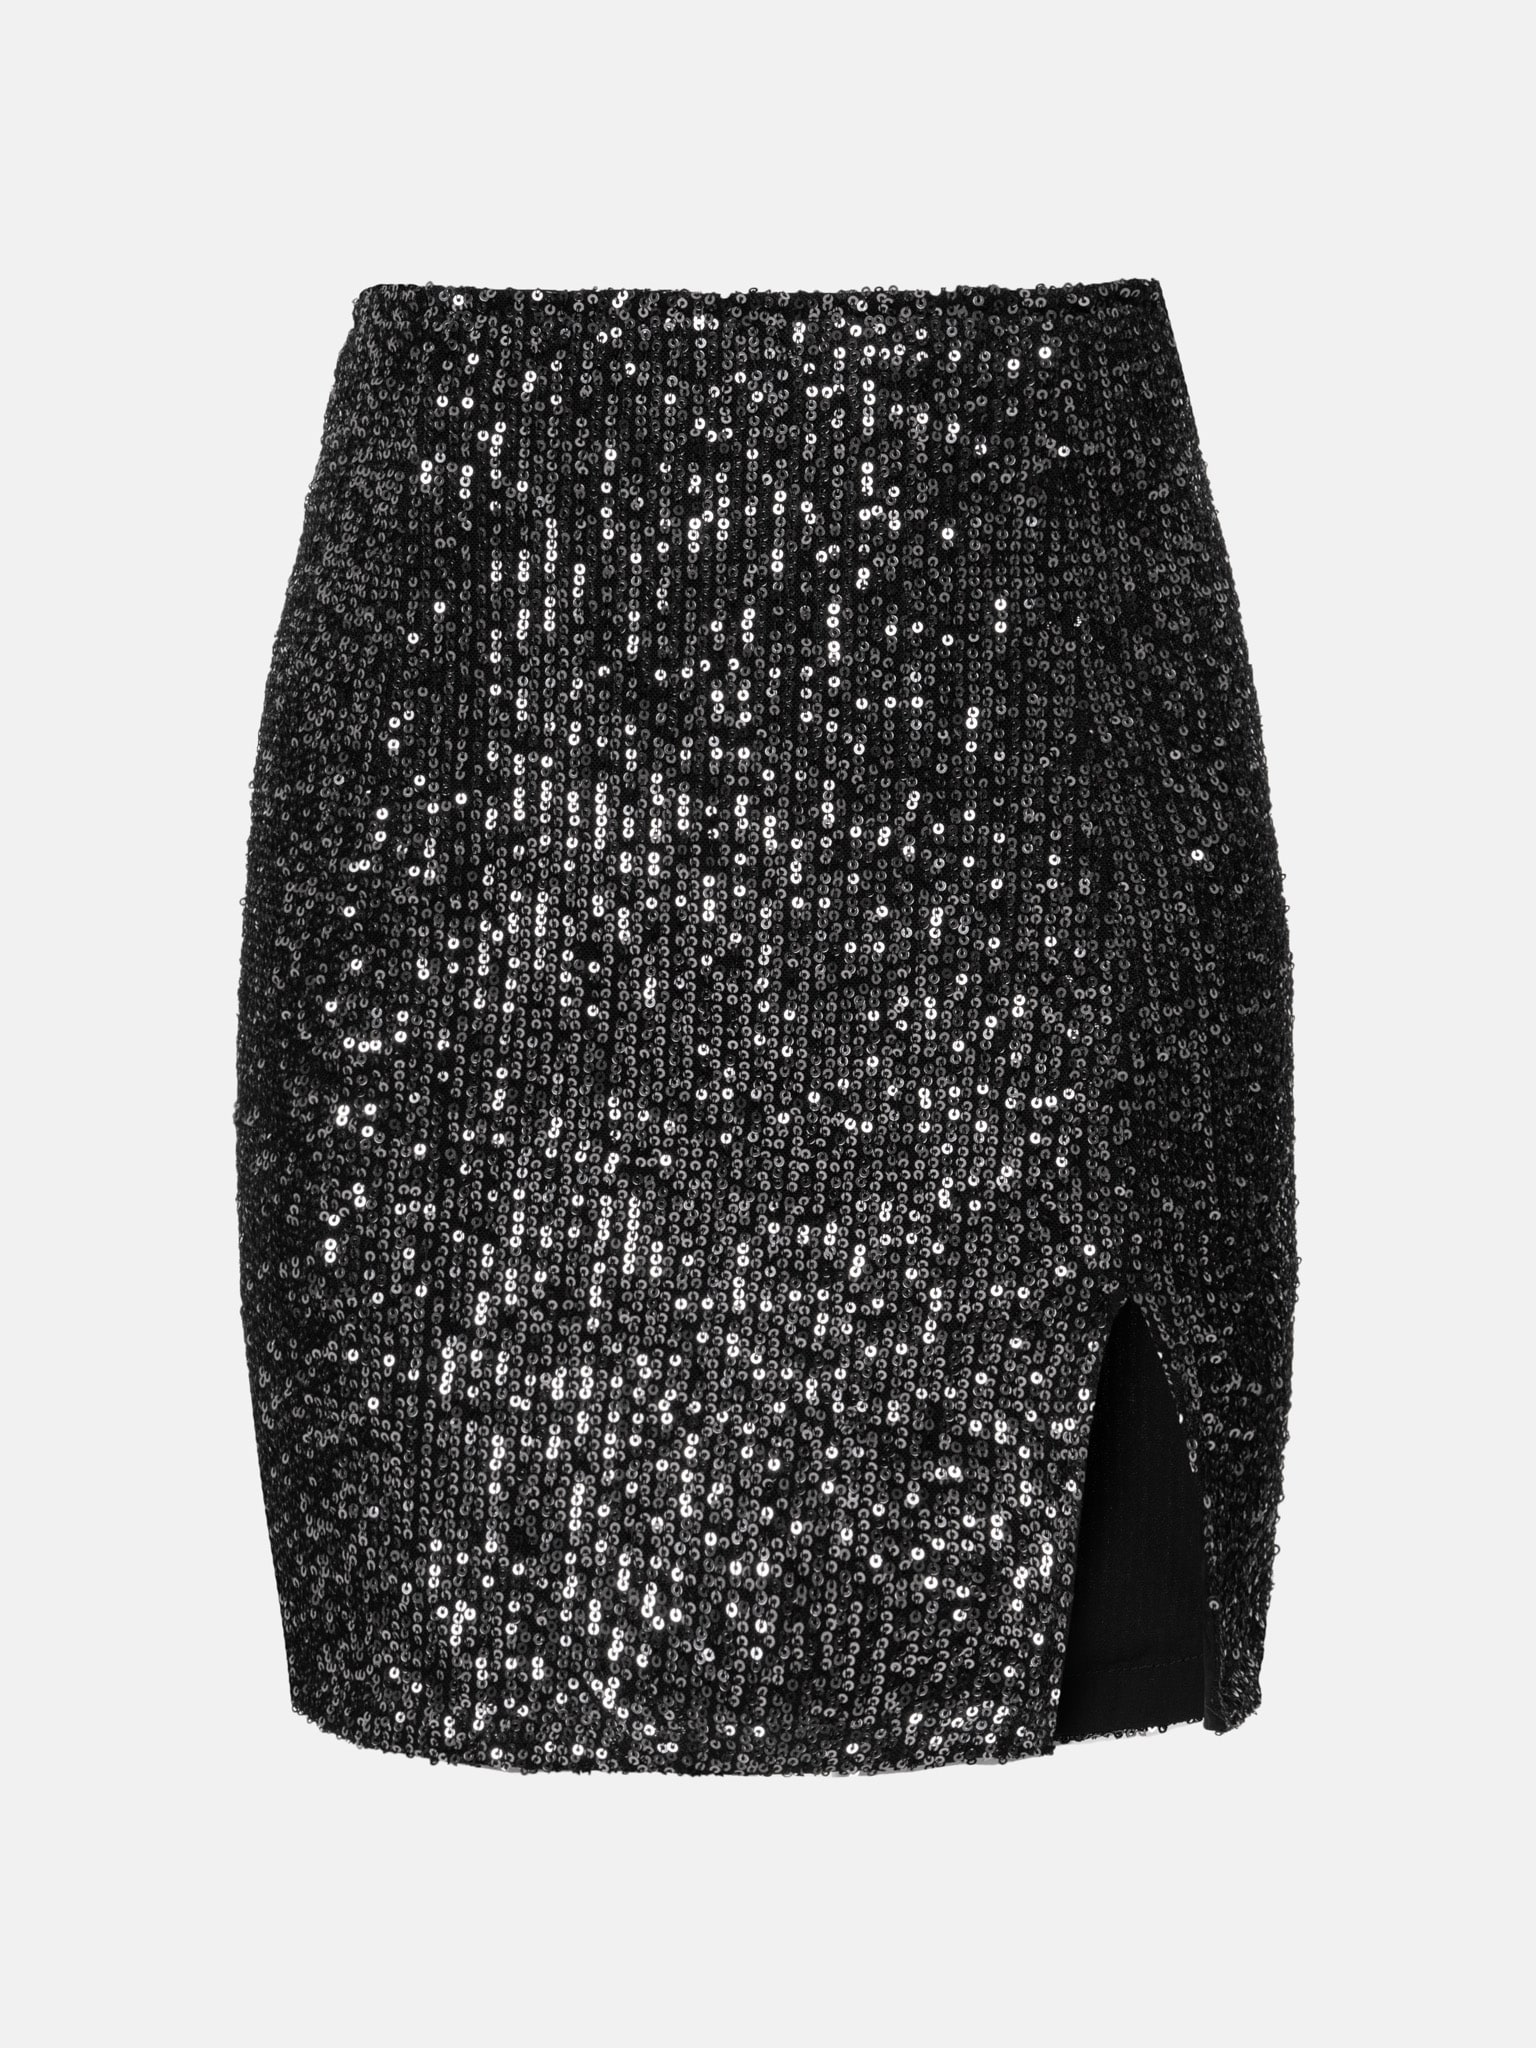 Sequined mini skirt